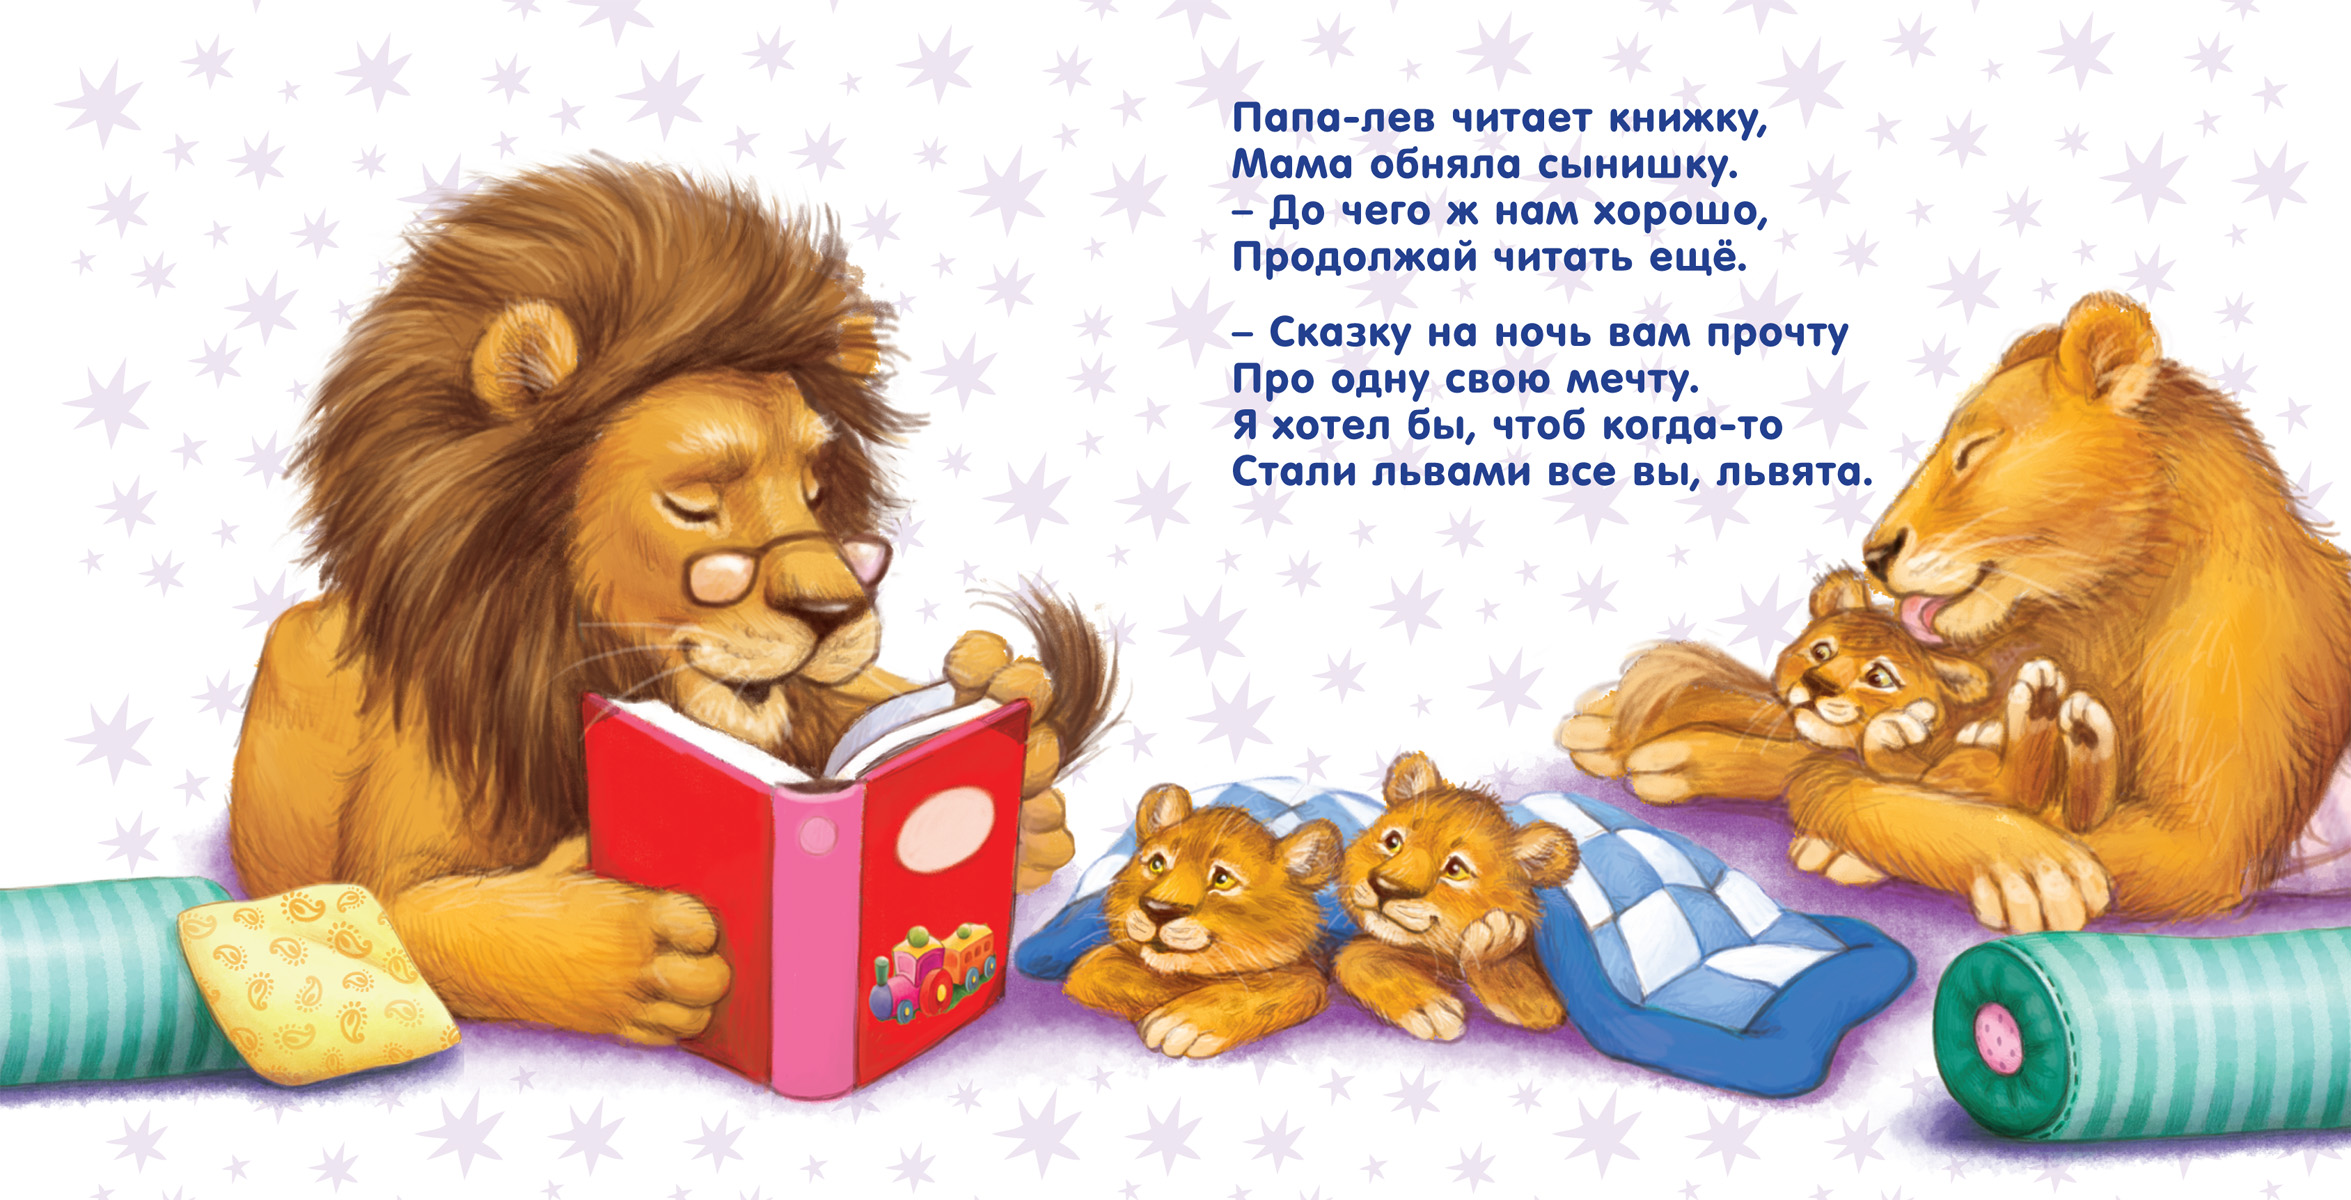 Сказки четверостишья. Детские книги. Сказки на ночь книга для детей. Сказки перед сном для детей. Детские книги читать.